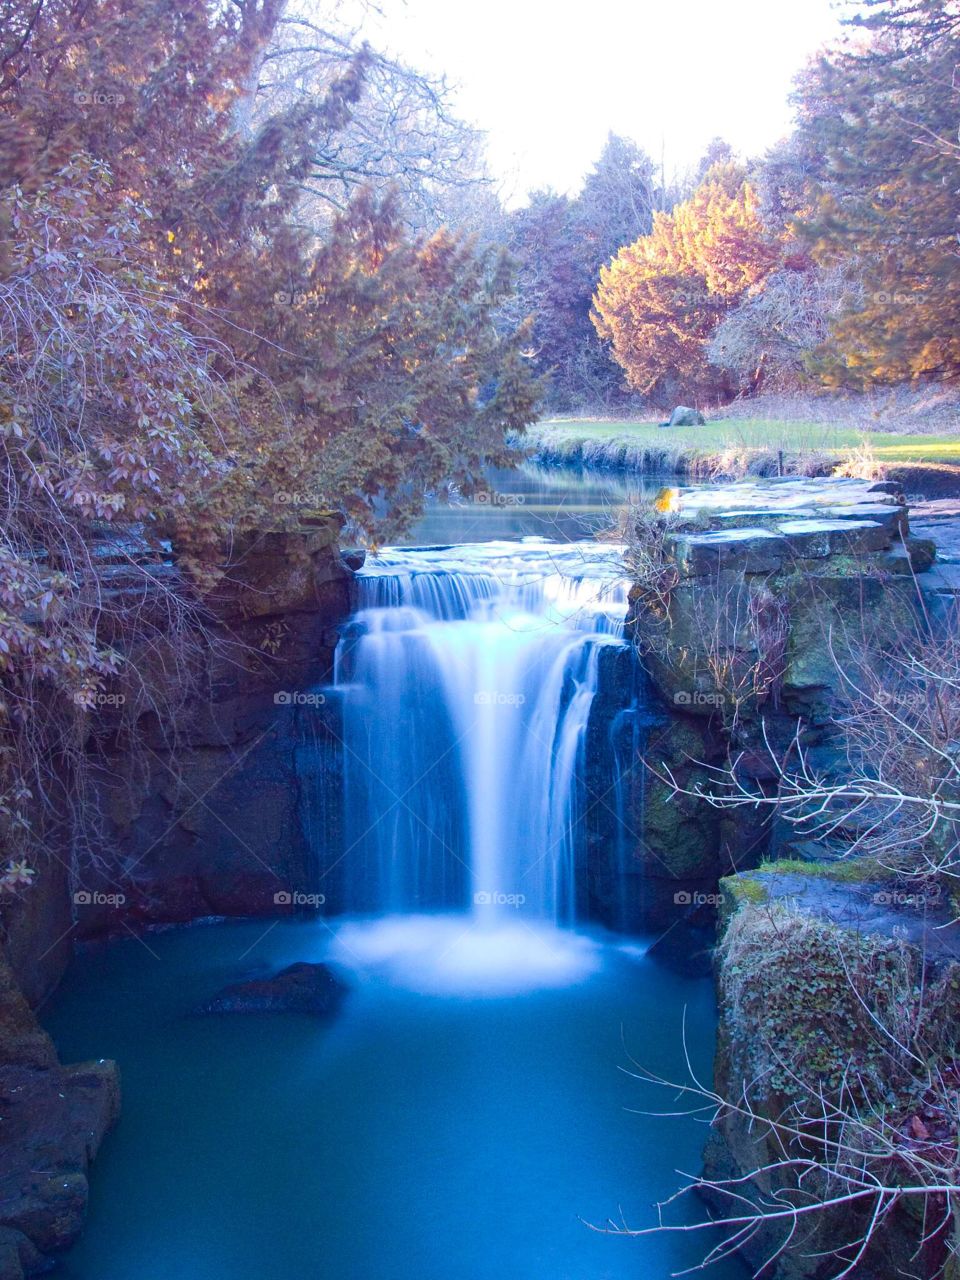 Amazing waterfall 